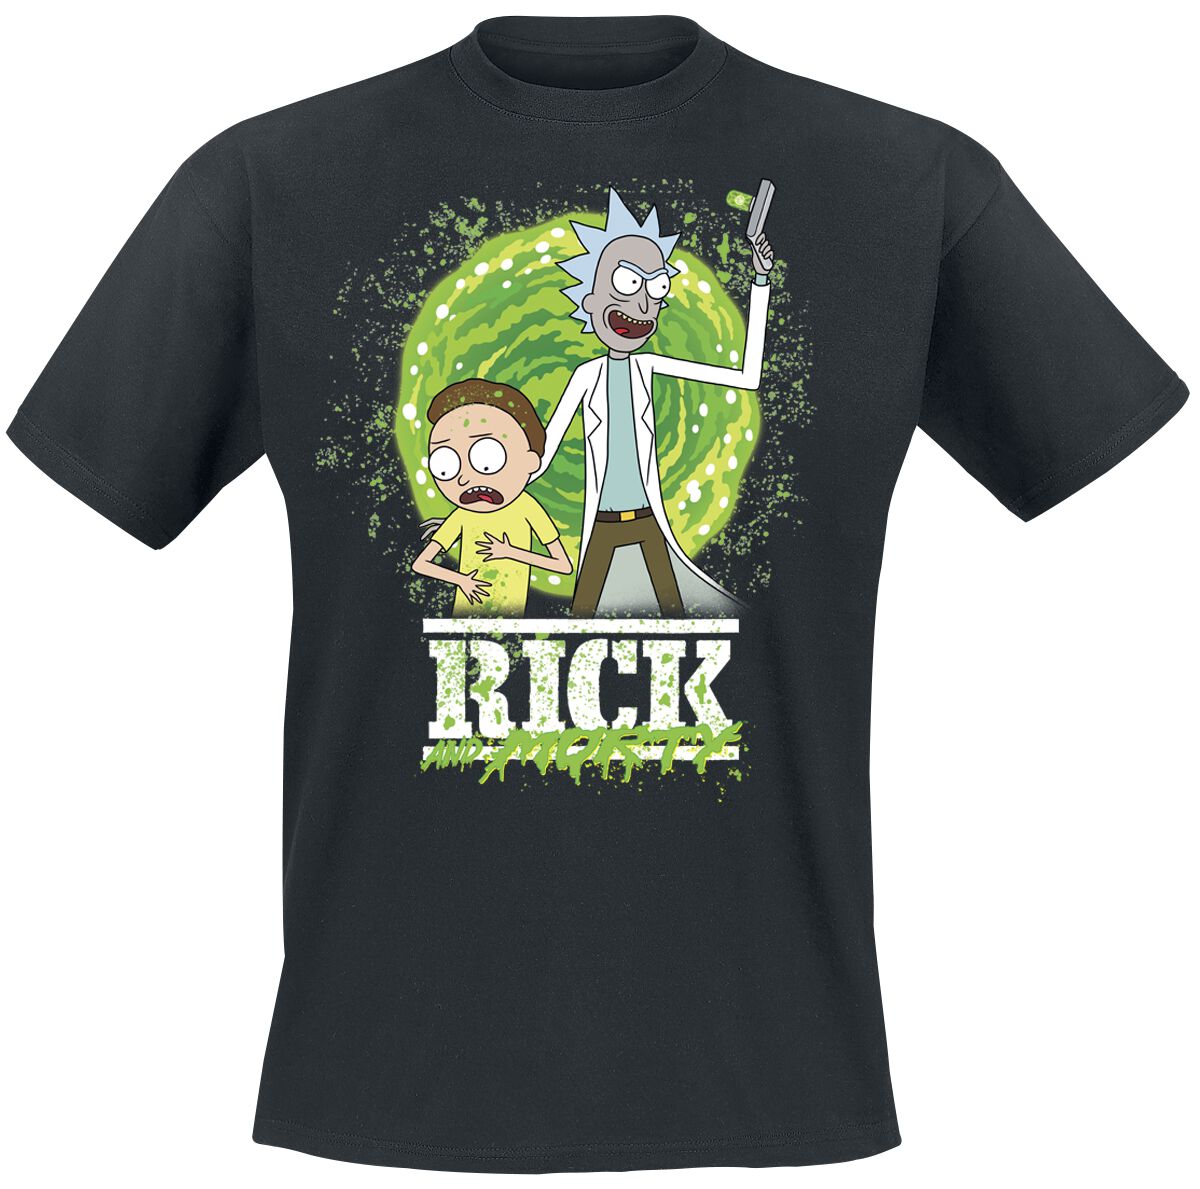 Rick And Morty T-Shirt - Season 6 - S bis XXL - für Männer - Größe S - schwarz  - Lizenzierter Fanartikel